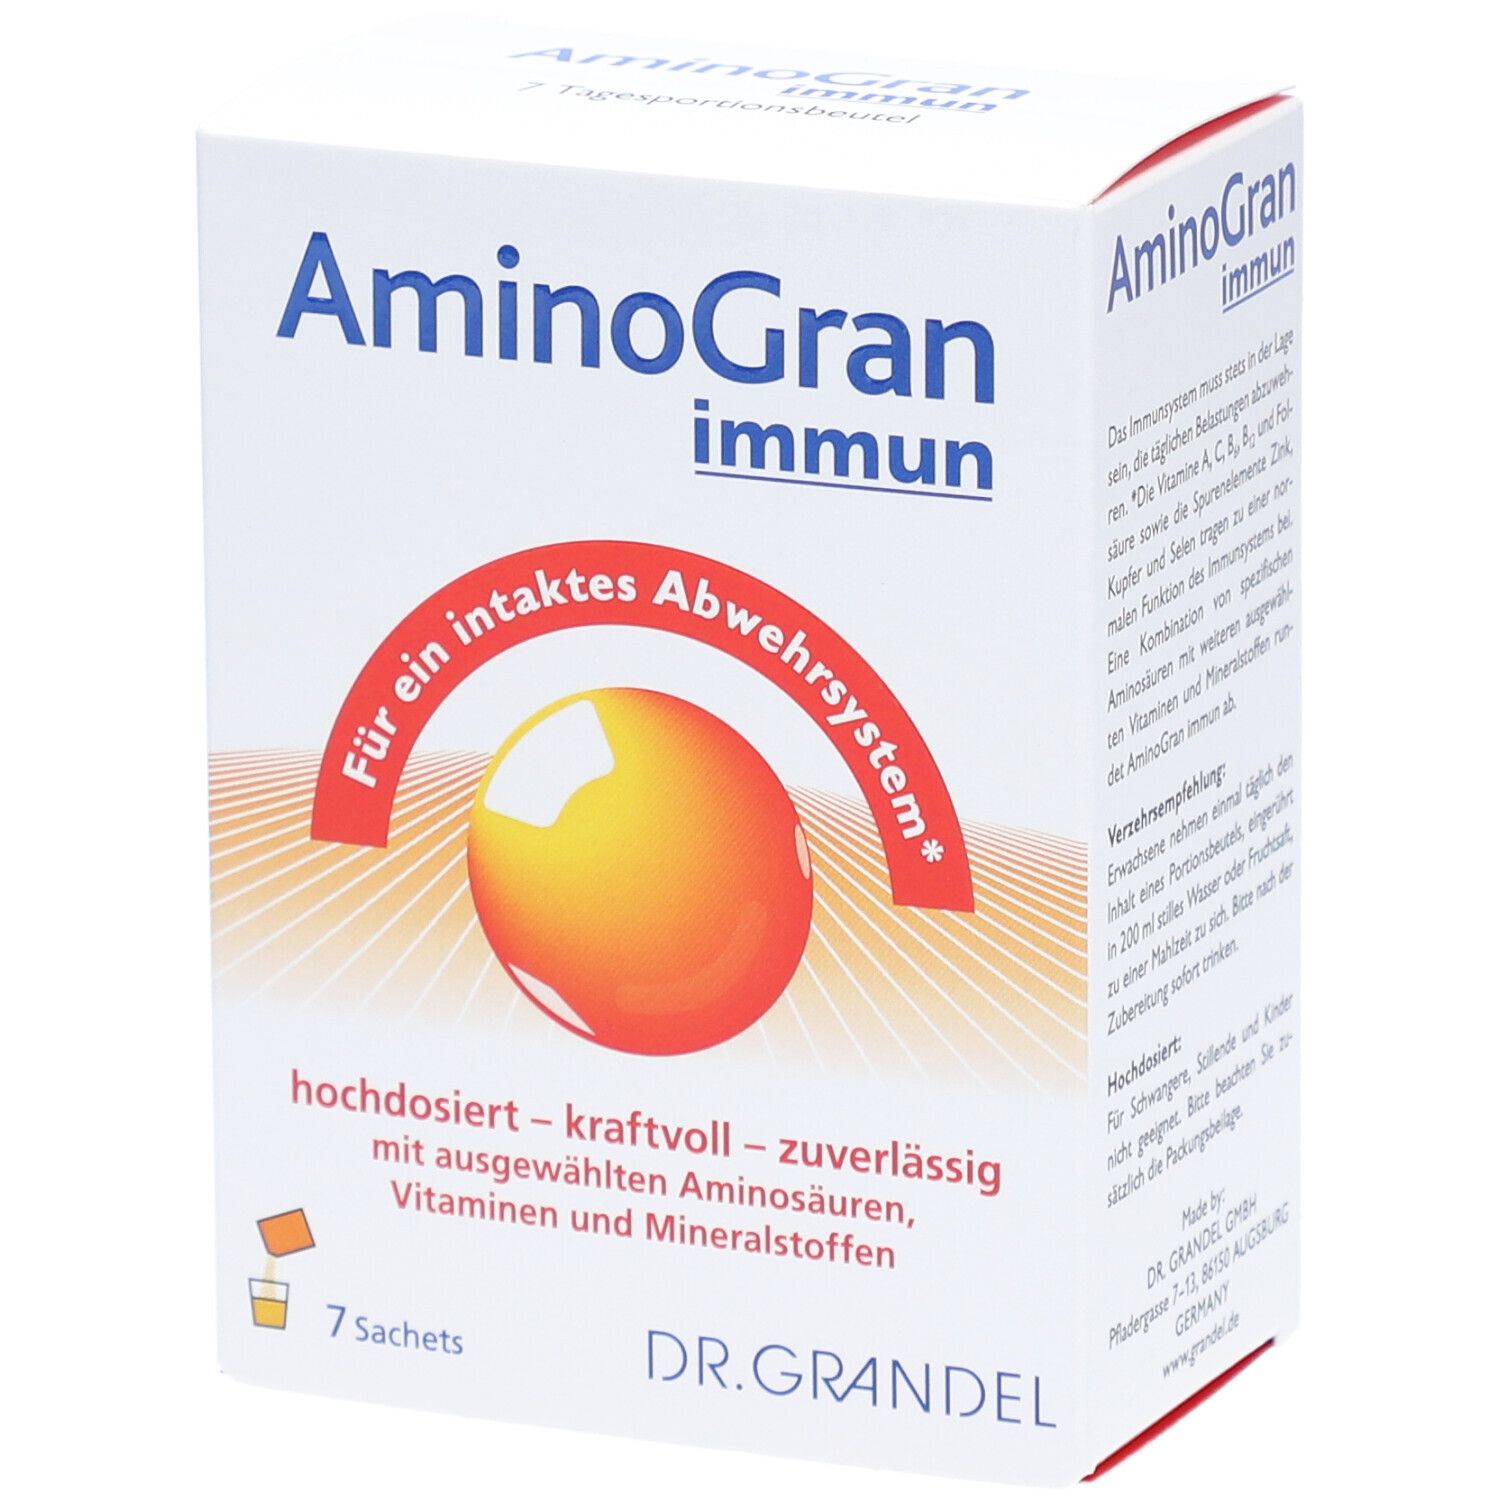 AminoGran immun